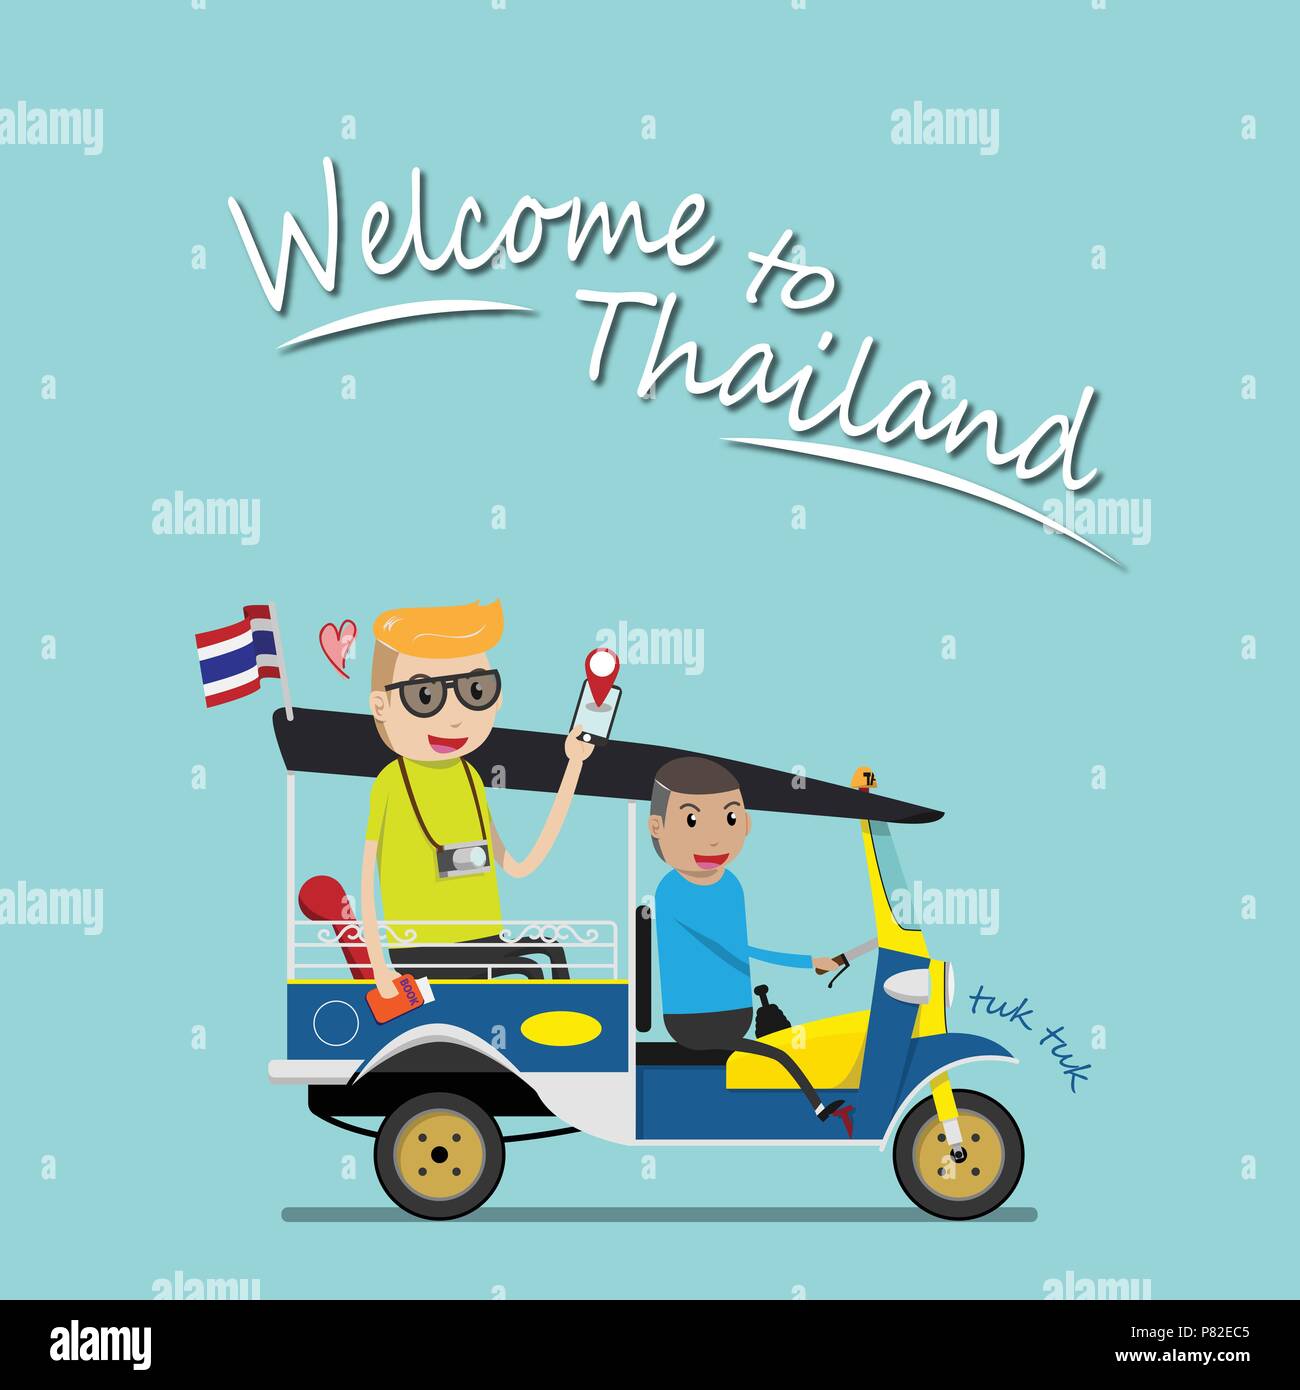 Ausländische Touristen tuk tuk nehmen für Sightseeing Sehenswürdigkeiten rund um Bangkok, Thailand. tuk tuk ist ein lokales Taxi Fahrzeug mit drei Rädern. Fahrt tuk tuk ist m Stock Vektor